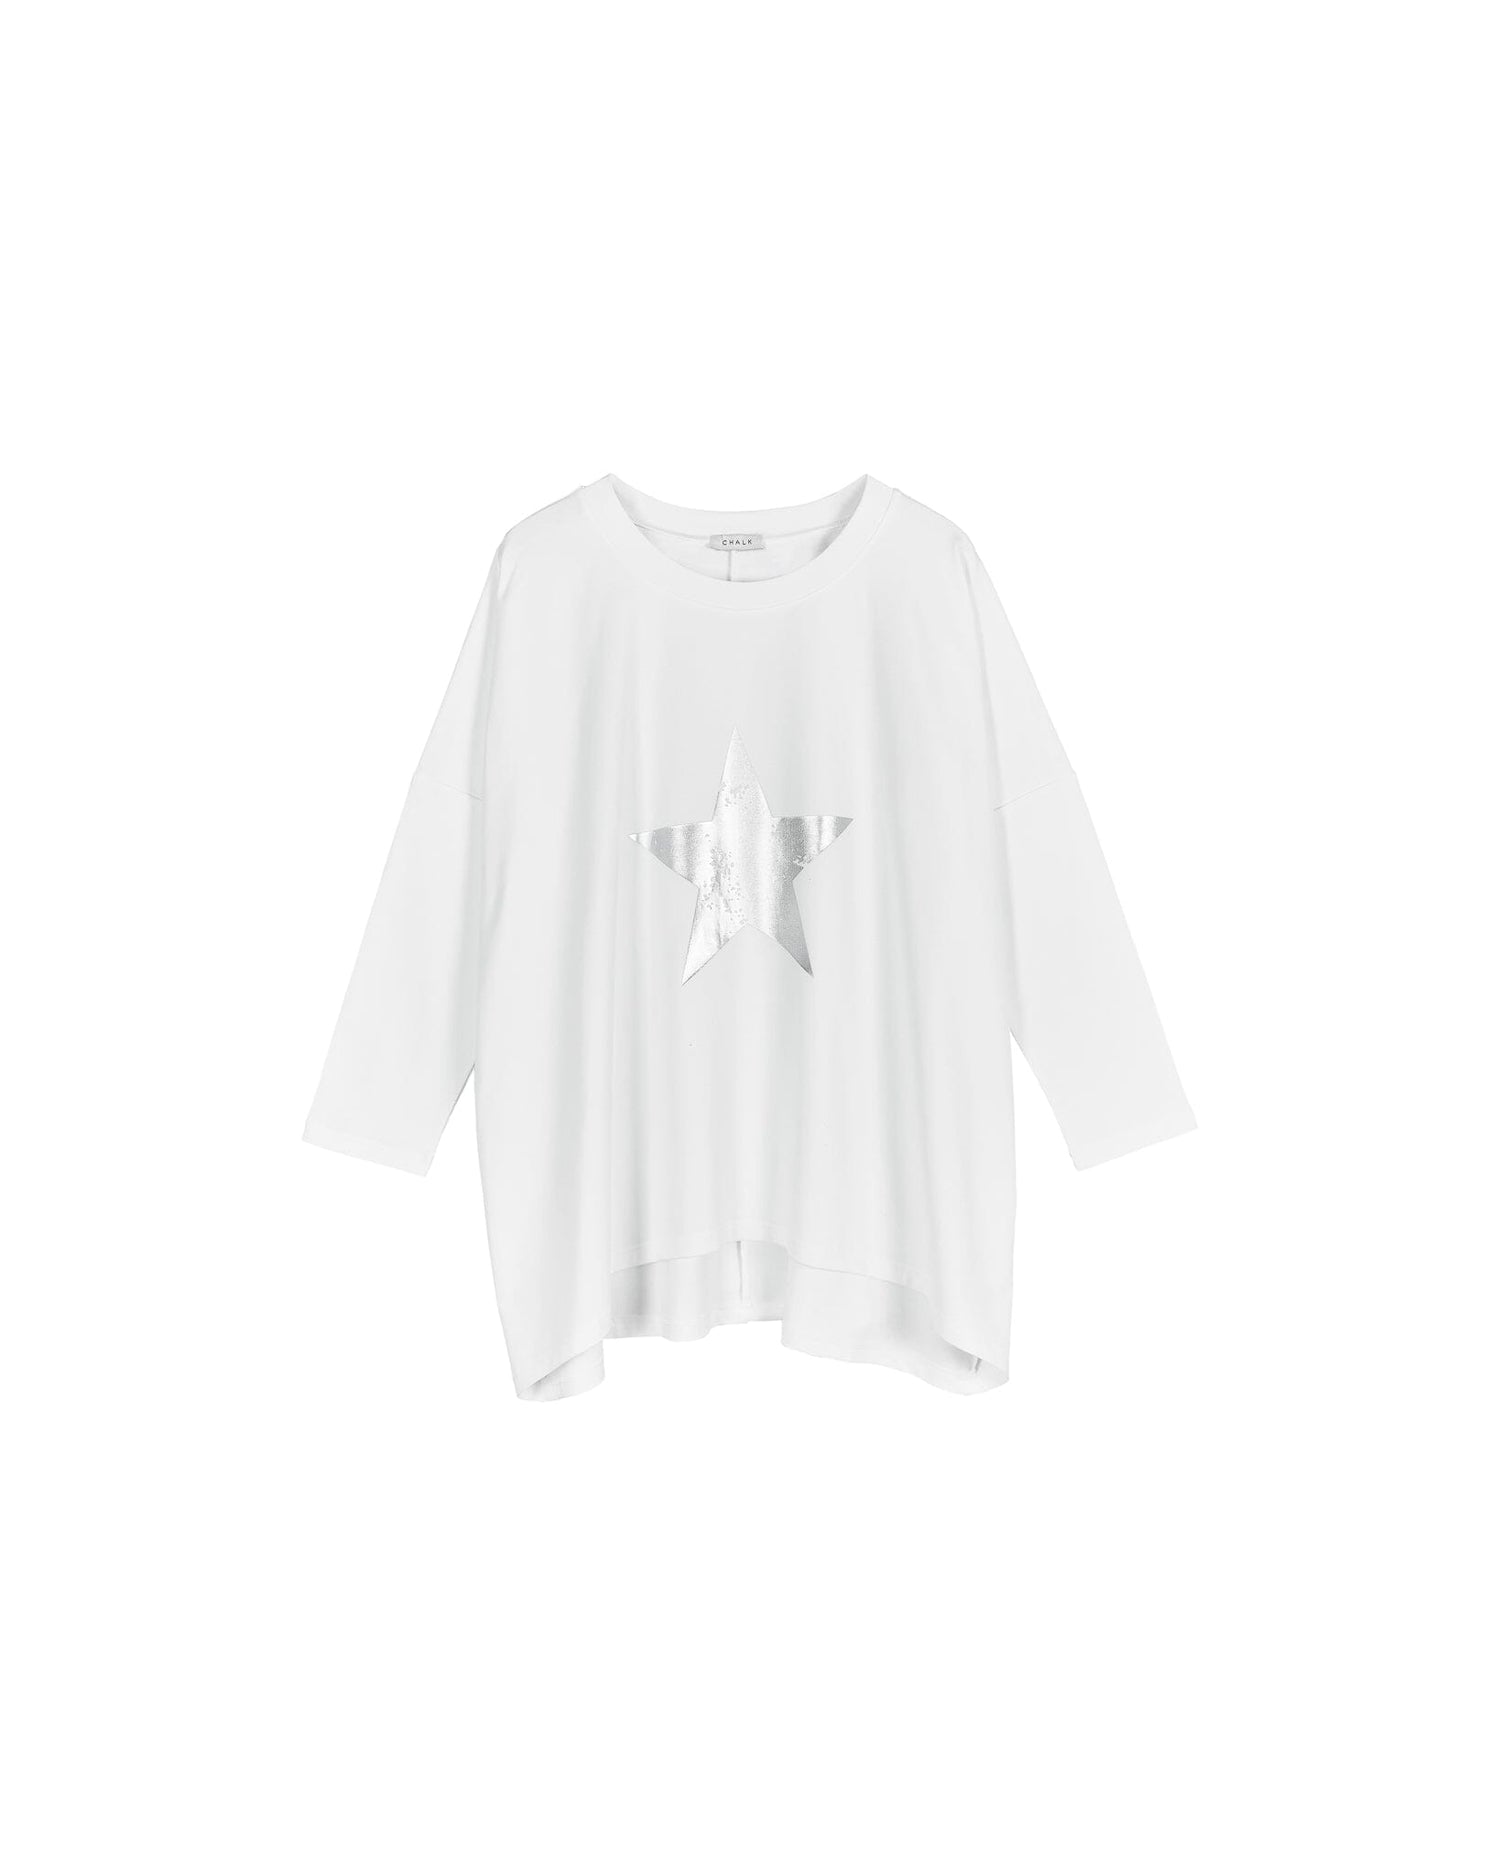 Olivia Top | White Star Shirts & Tops Chalk 